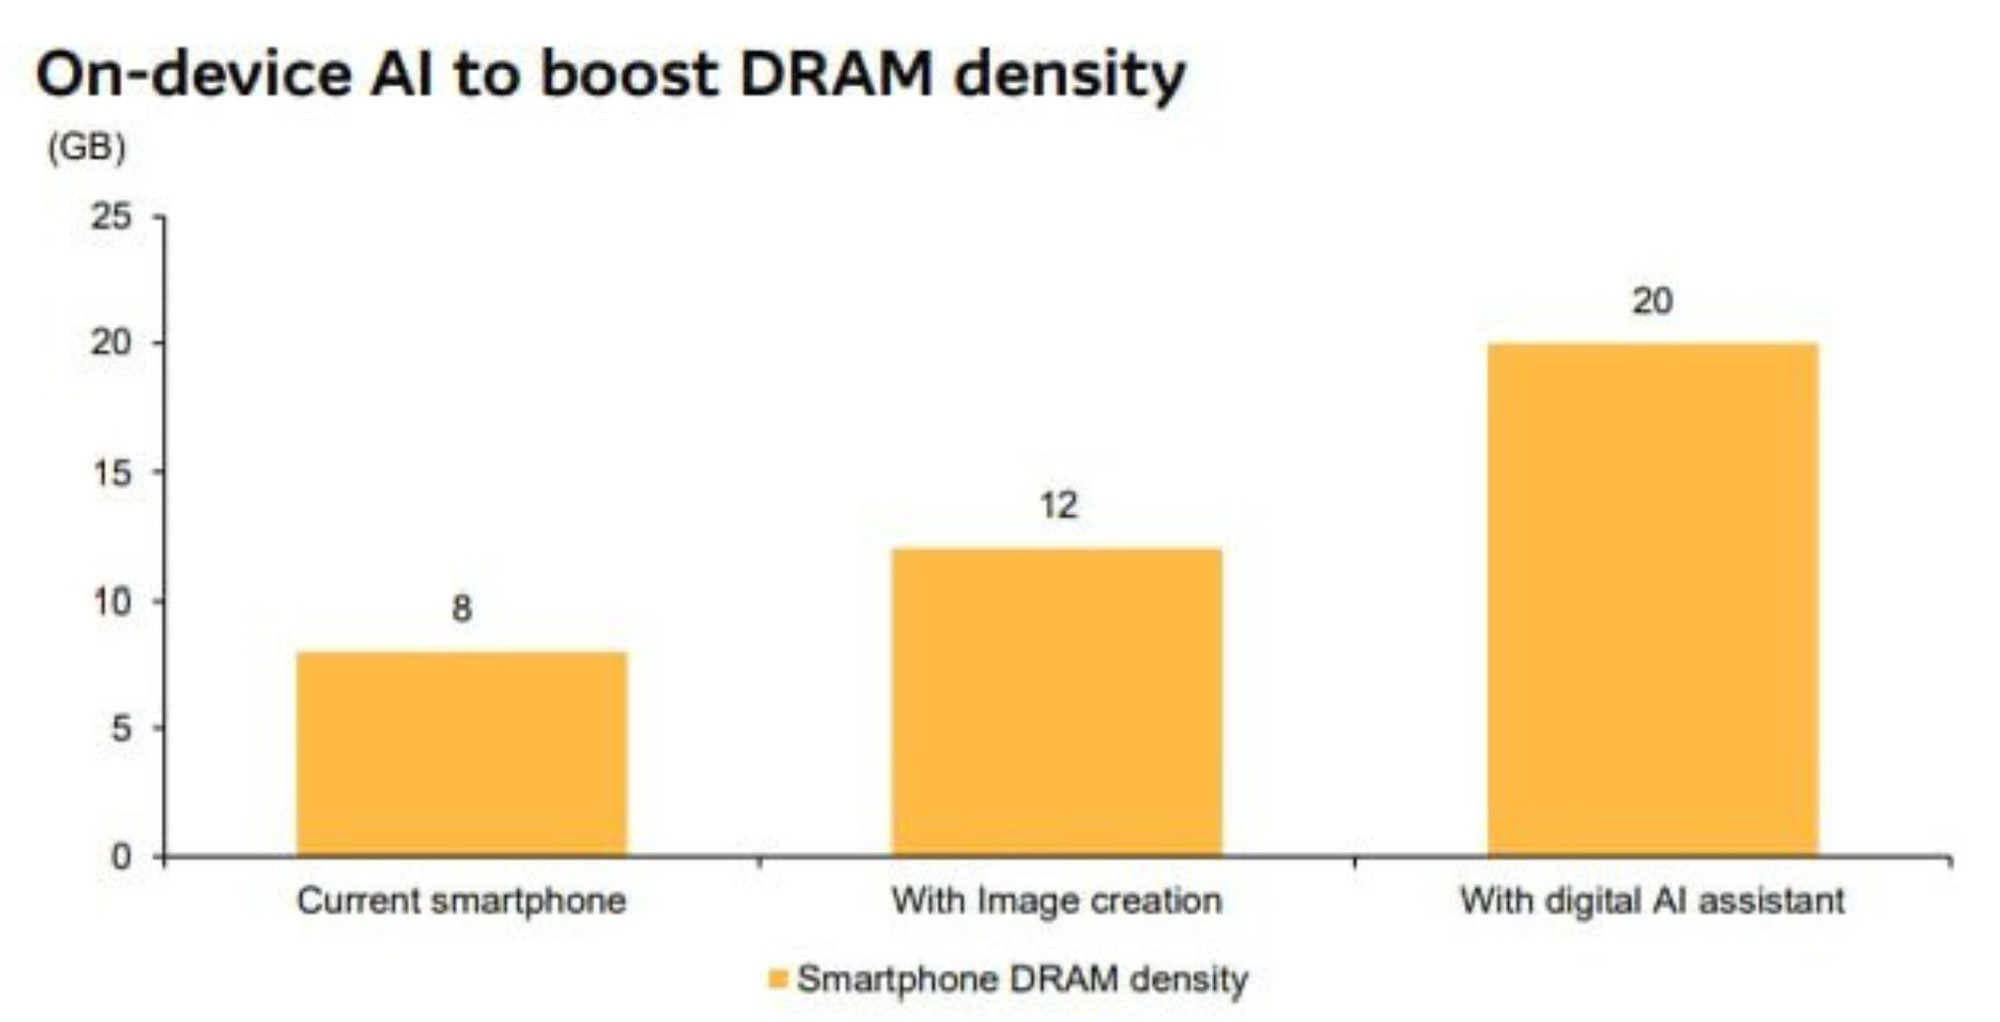 Muốn có AI trên smartphone thì Samsung phải bổ sung ít nhất 20GB RAM mới "ngon", nhưng Apple có chiêu khác - Ảnh 1.